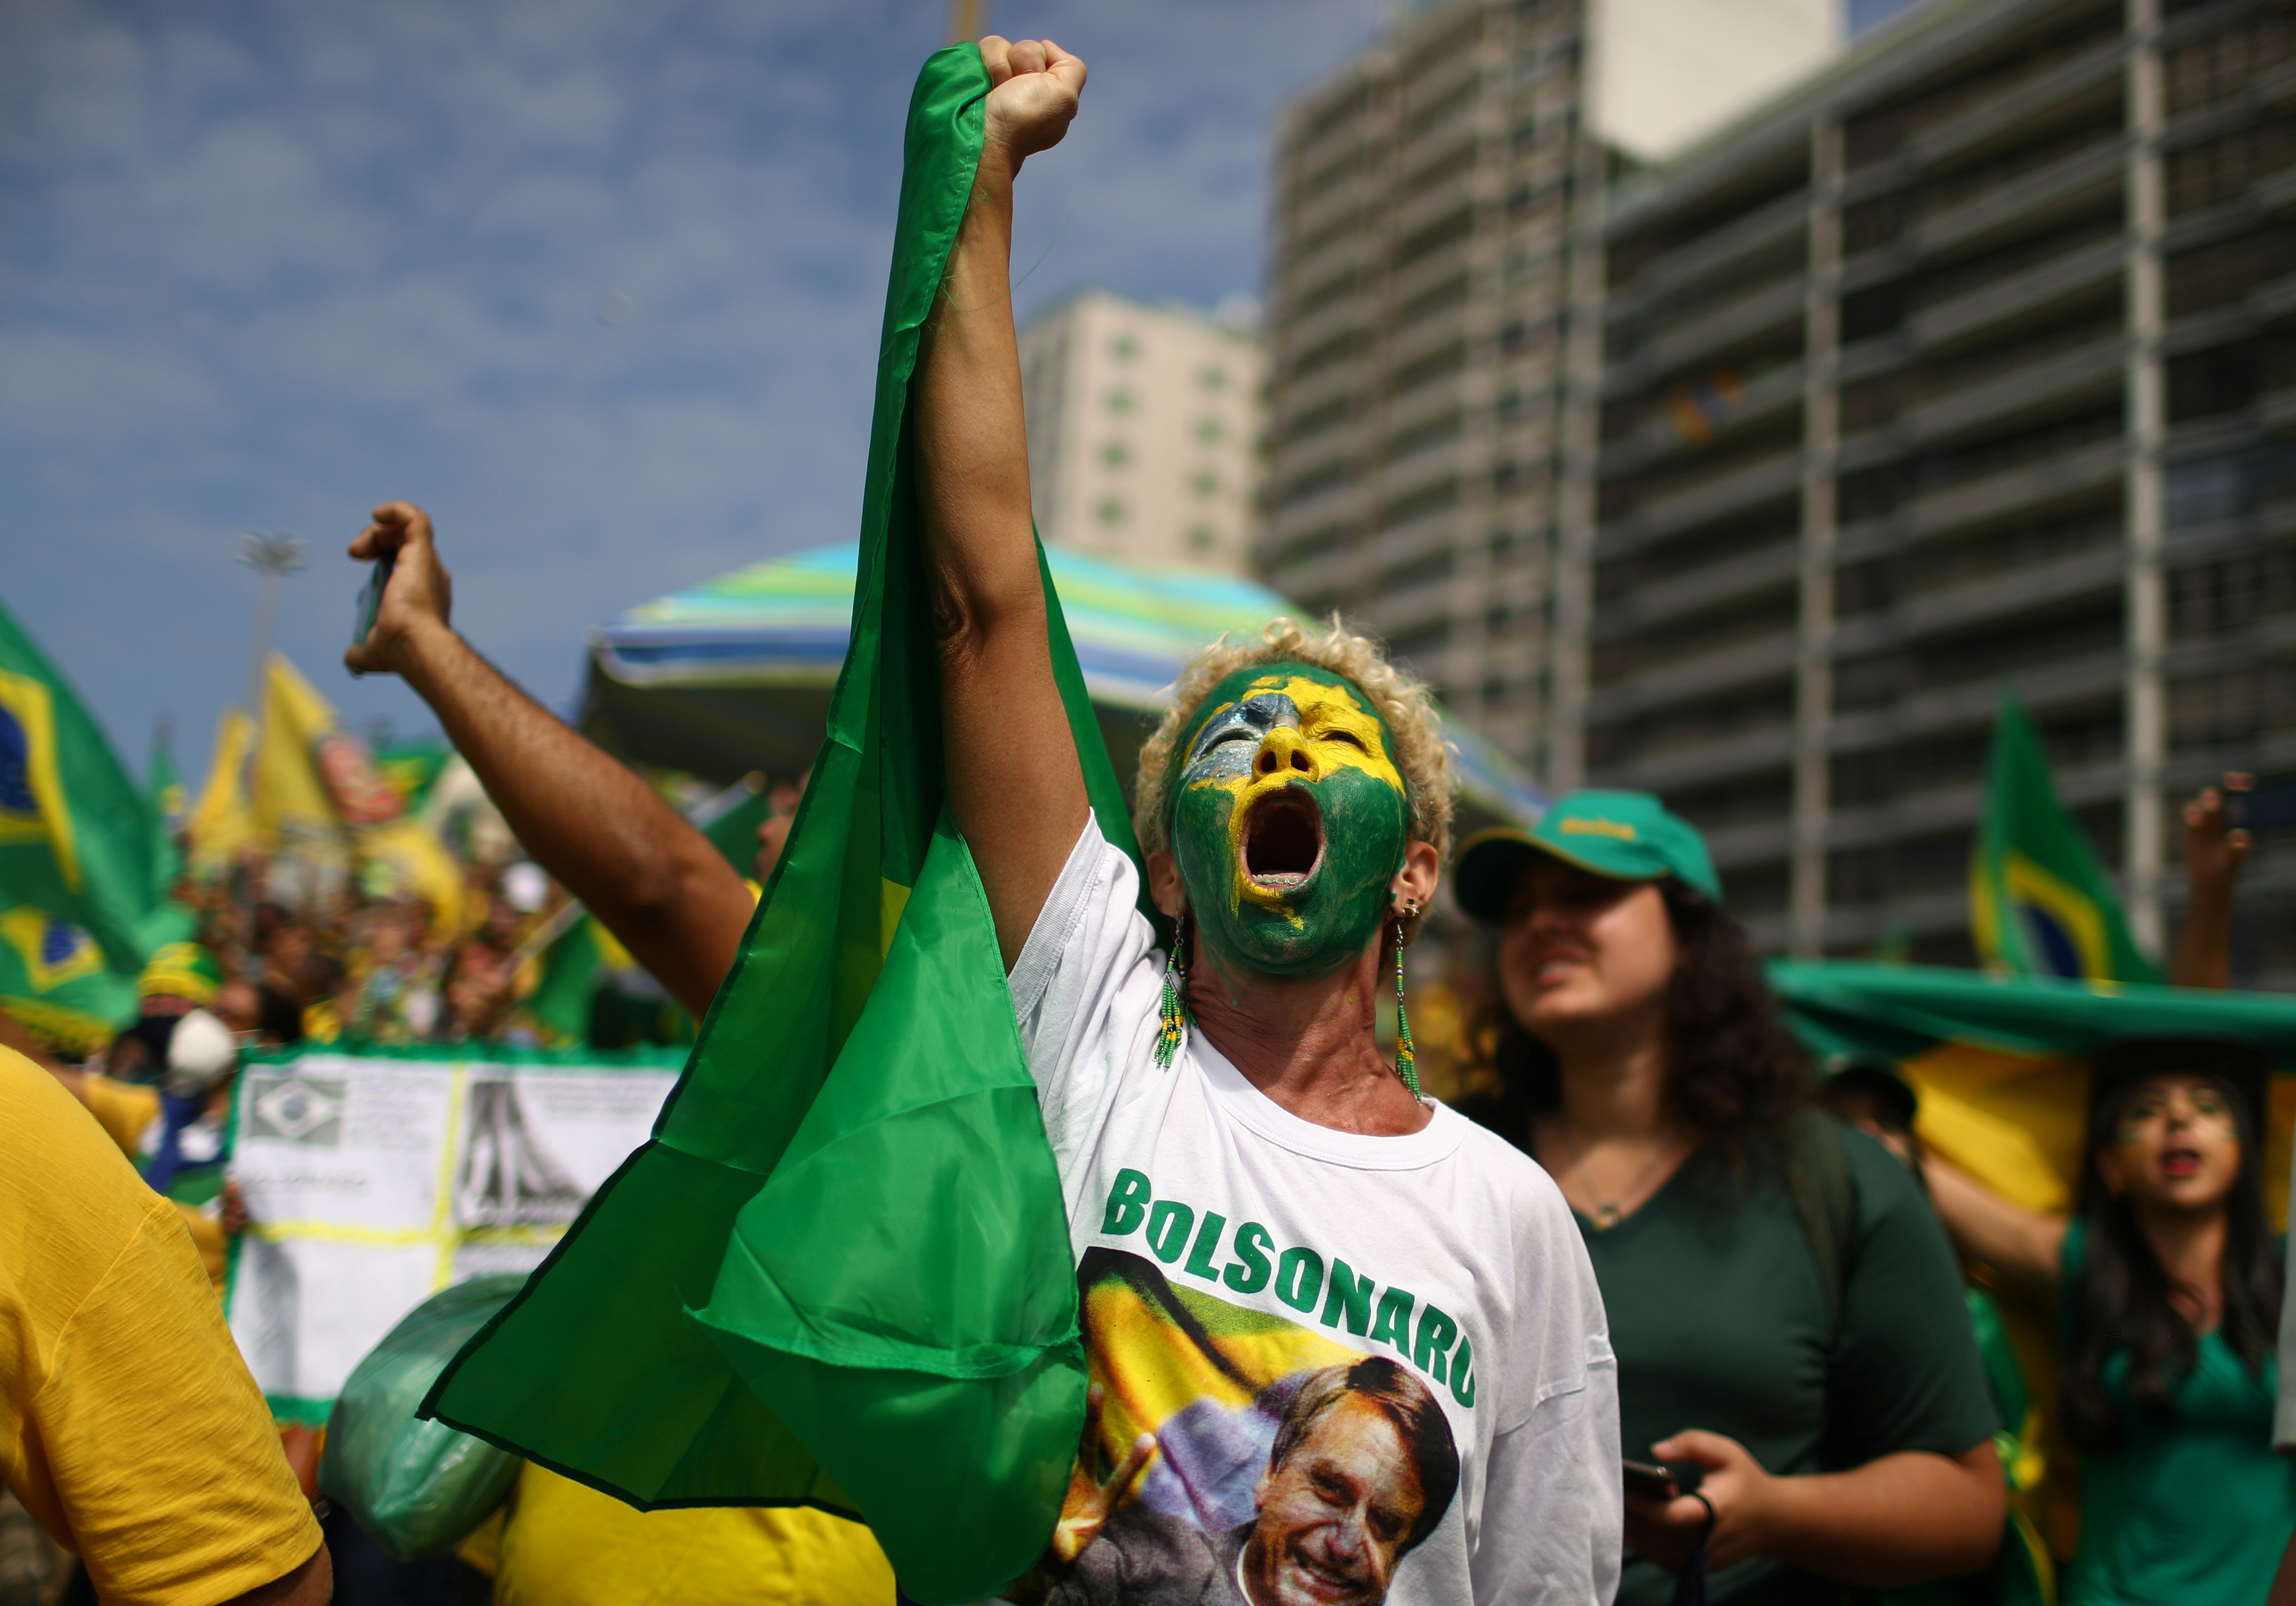 Una manifestante se movilizó en Río de Janeiro con una remera de Jair Bolsonaro y la cara pintada, en apoyo al presidente brasileño (Fotos: REUTERS